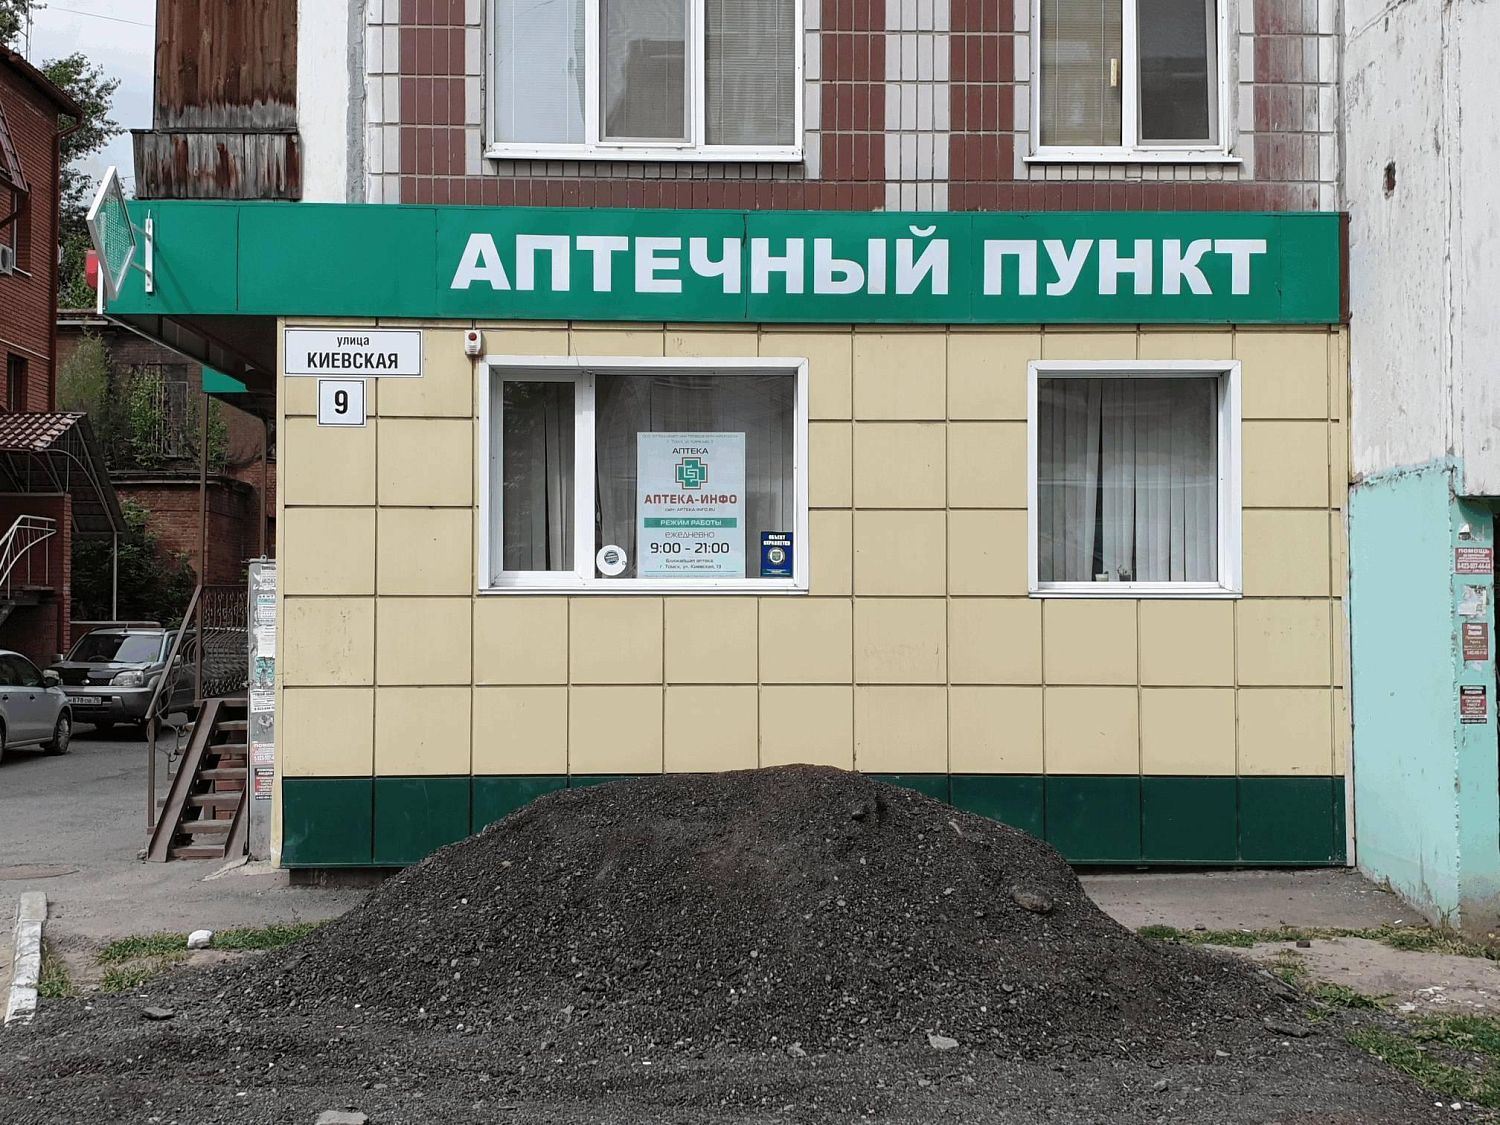 Новая аптека в Томске на ул. Киевской, д. 9